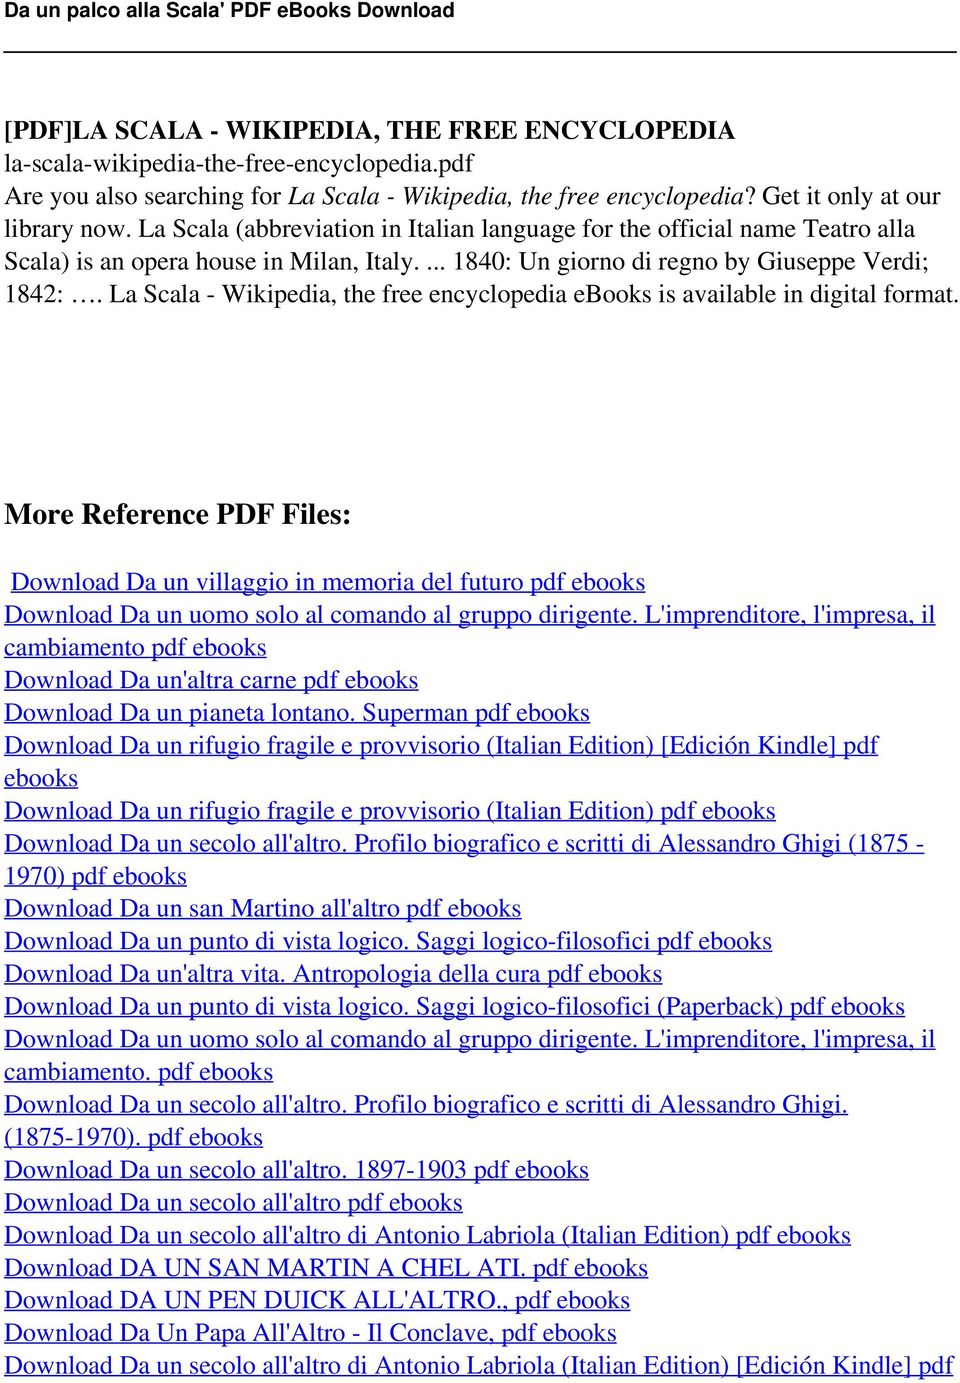 La Scala - Wikipedia, the free encyclopedia ebooks is More Reference PDF Files: Download Da un villaggio in memoria del futuro pdf ebooks Download Da un uomo solo al comando al gruppo dirigente.